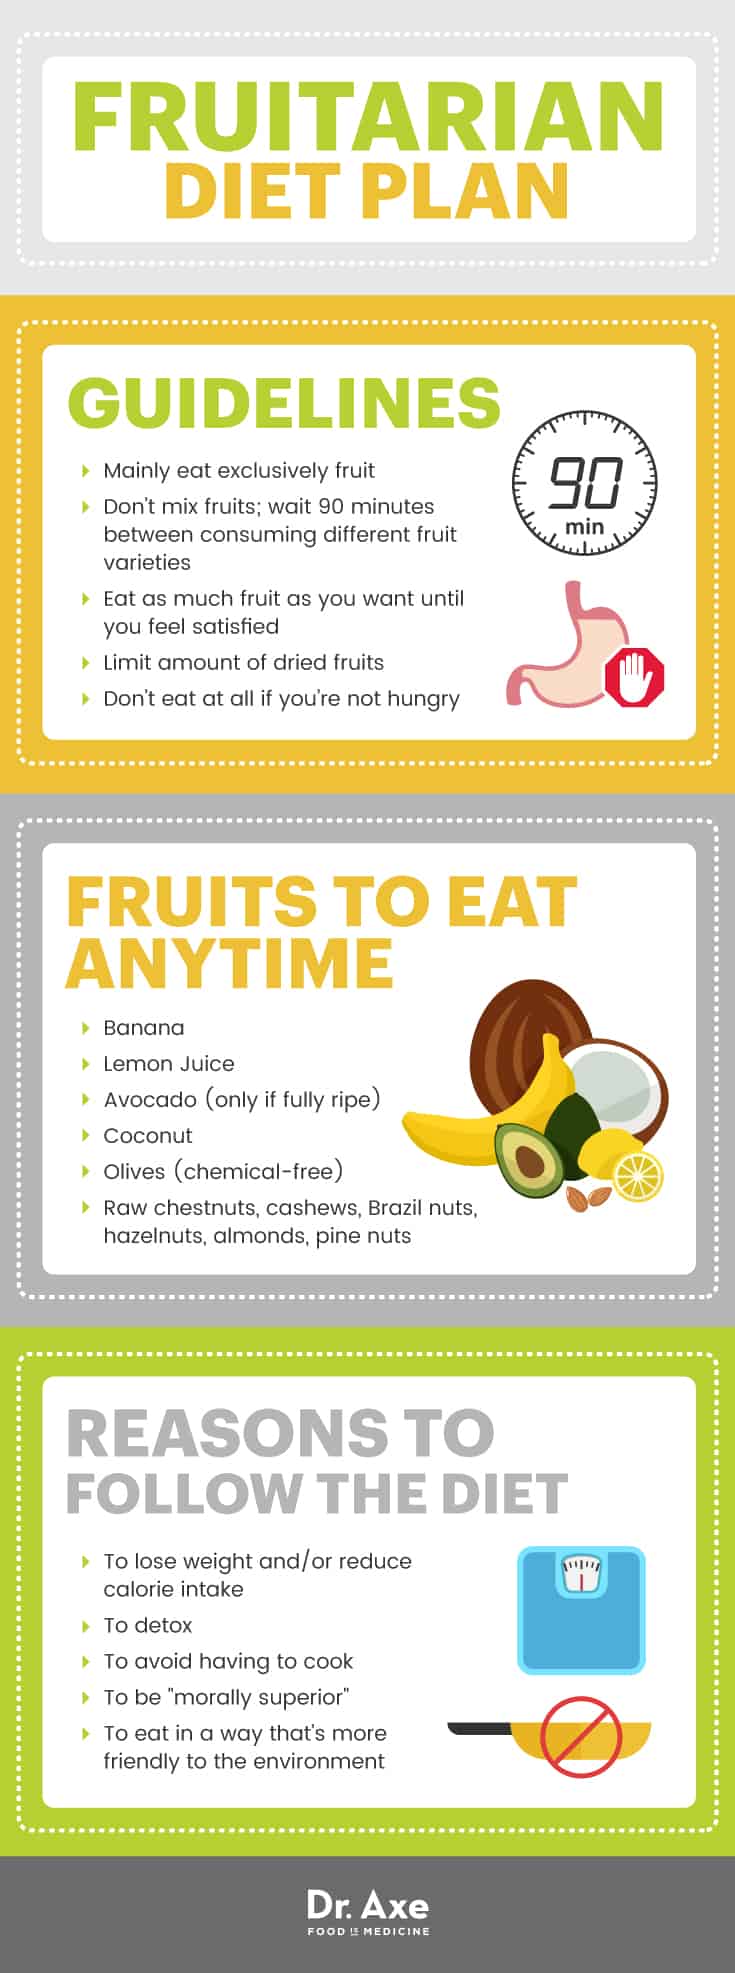 Fruitarian diet plan - Dr. Axe